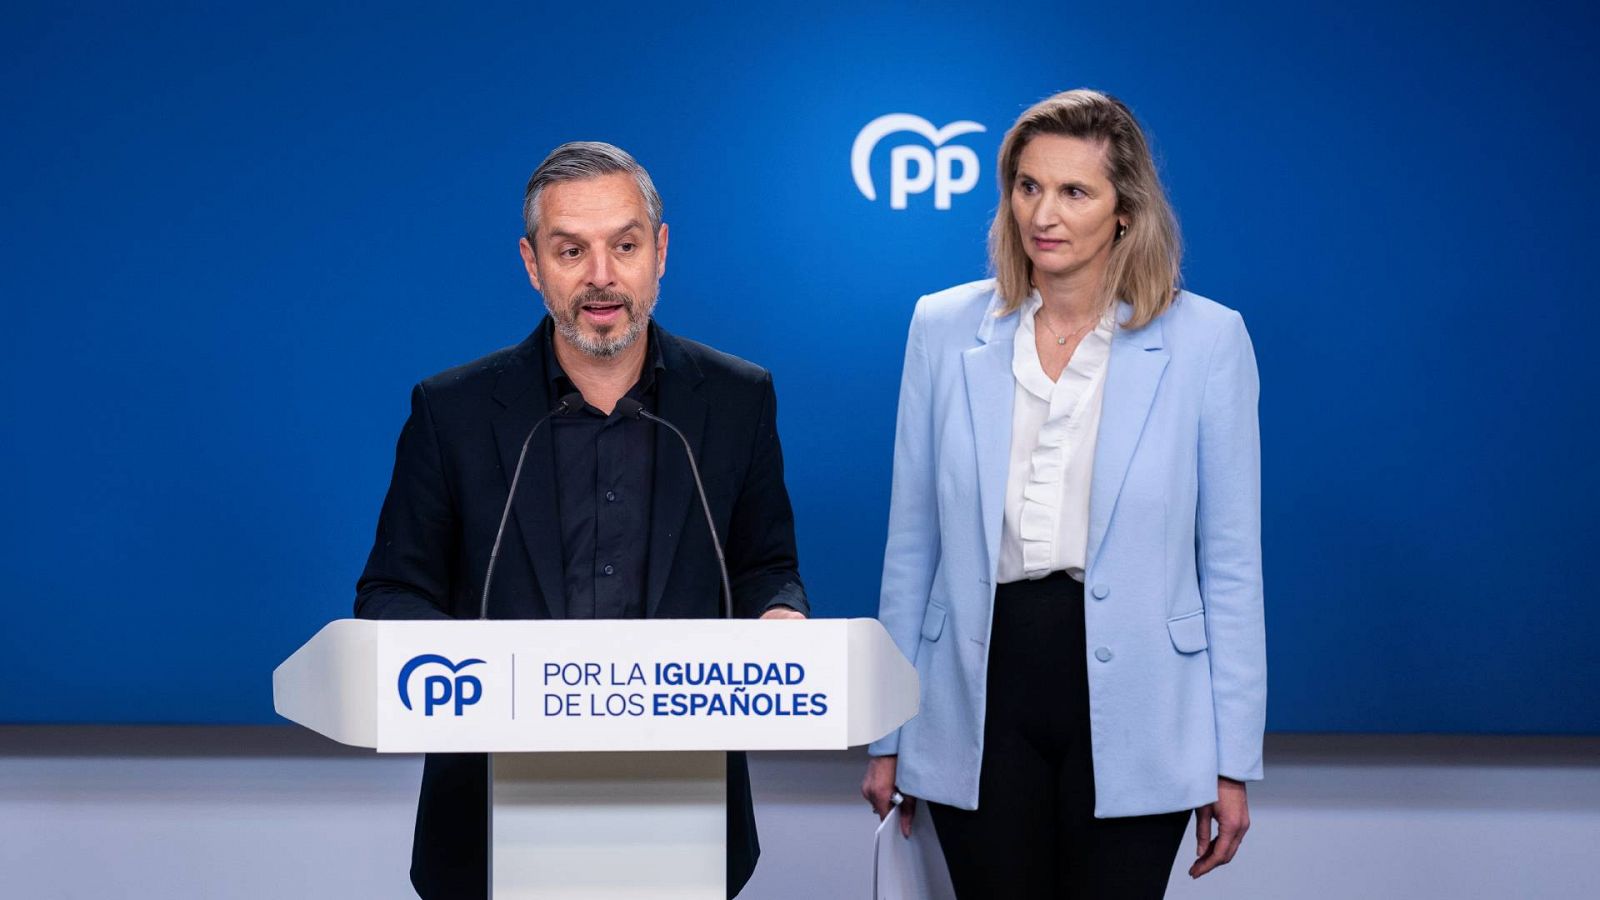 El vicesecretario de Economía del PP, Juan Bravo, y la vicesecretaria de Desarrollo Sostenible del PP, Paloma Martín